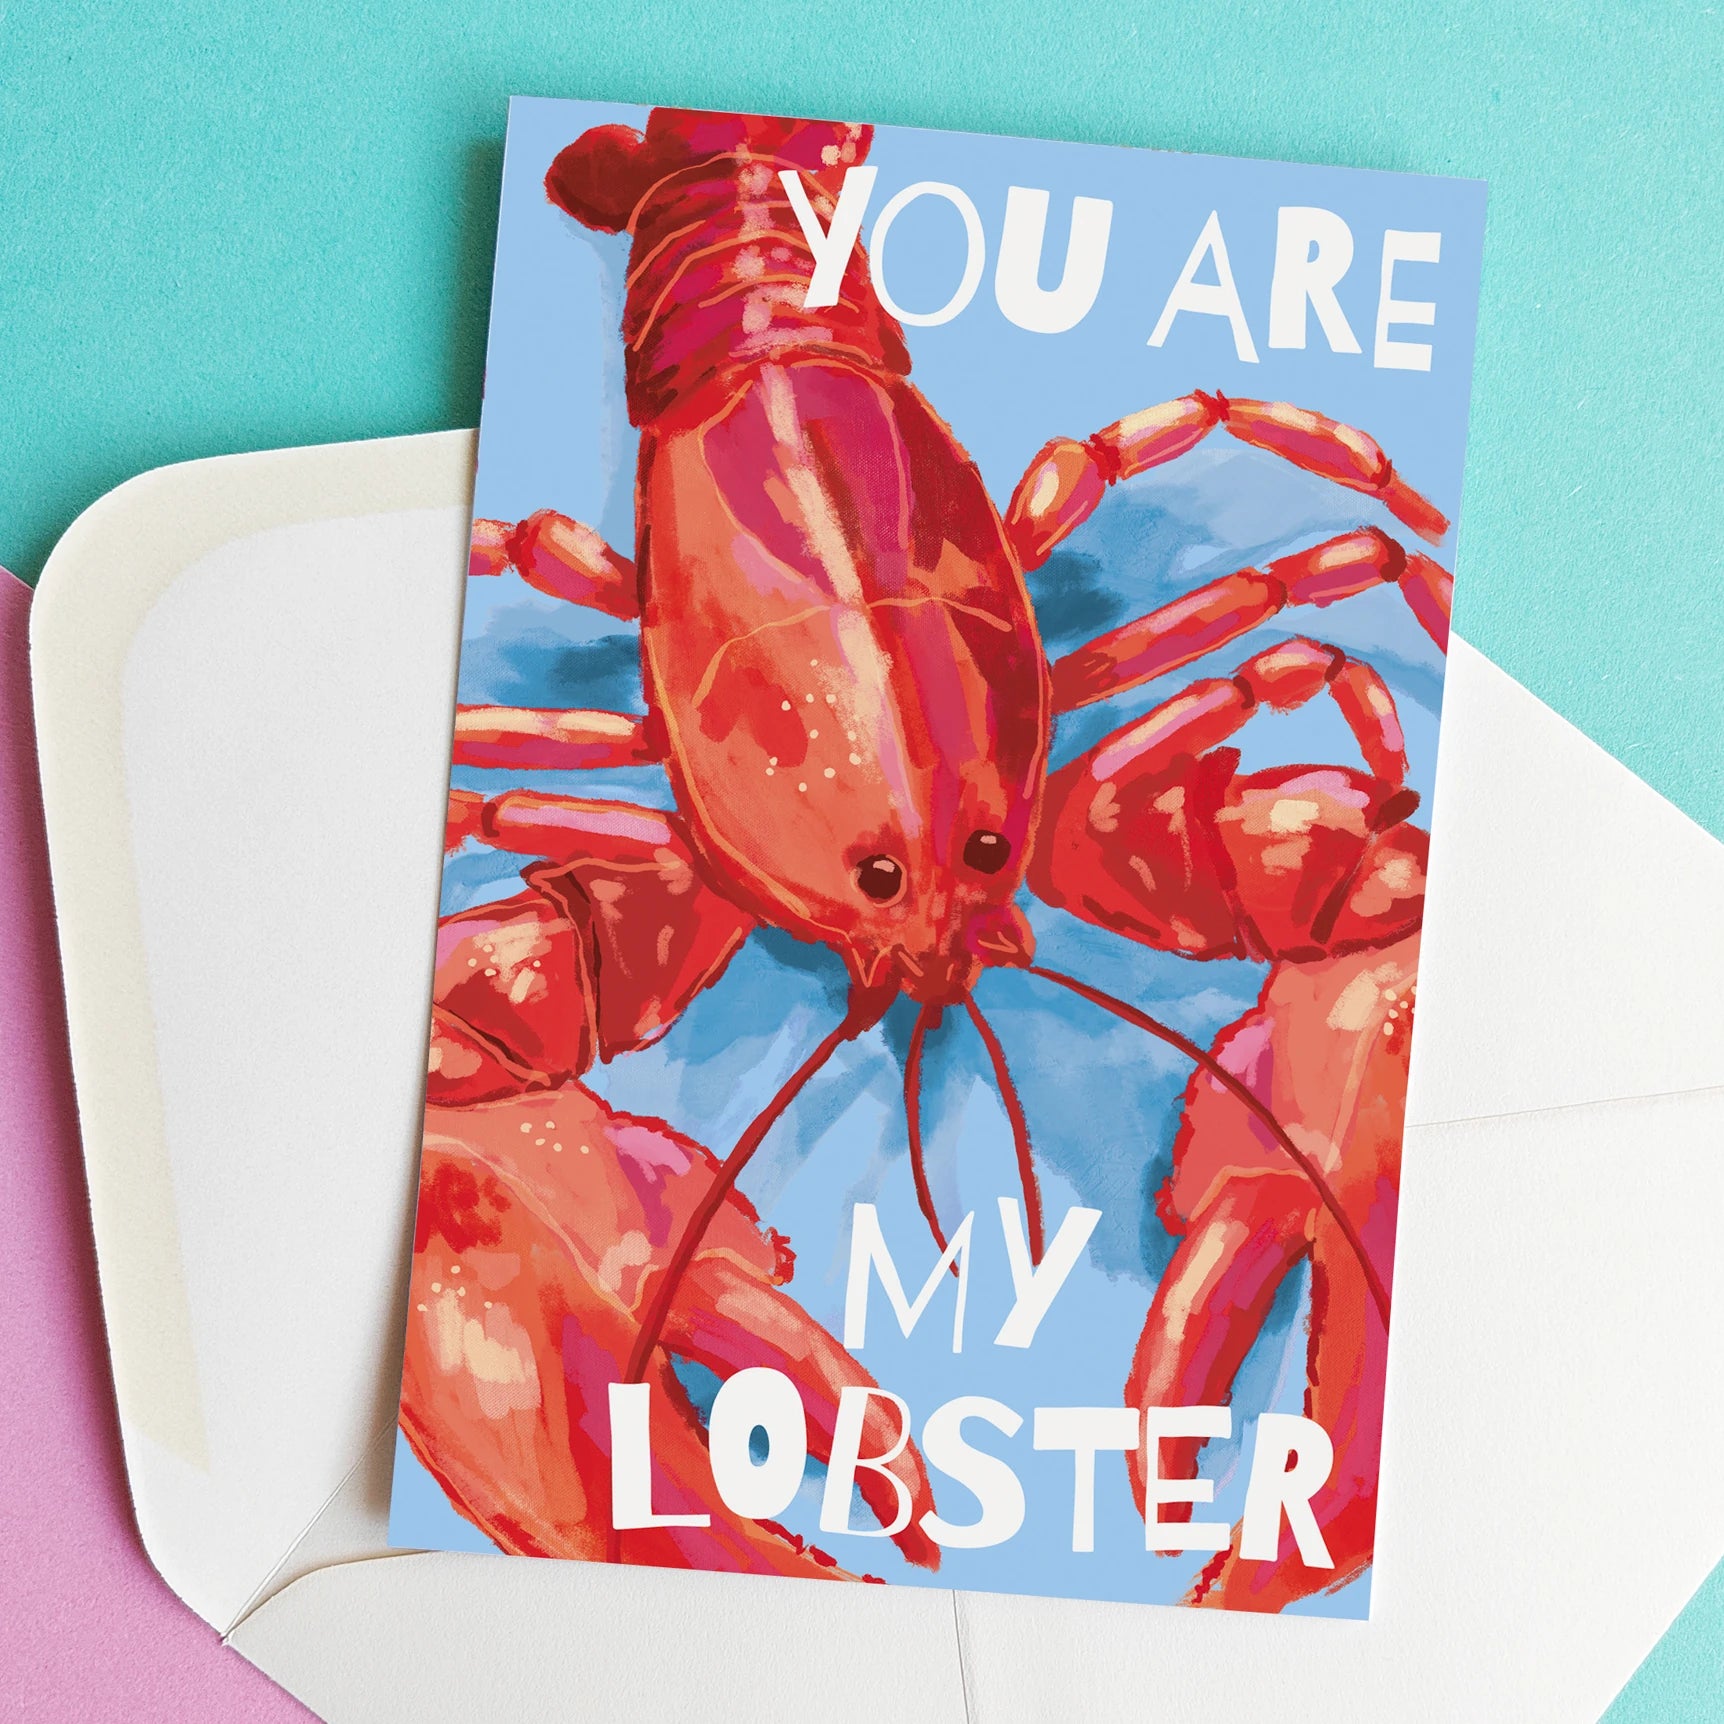 Tarjeta de felicitación con una langosta y el mensaje "you are my lobster"